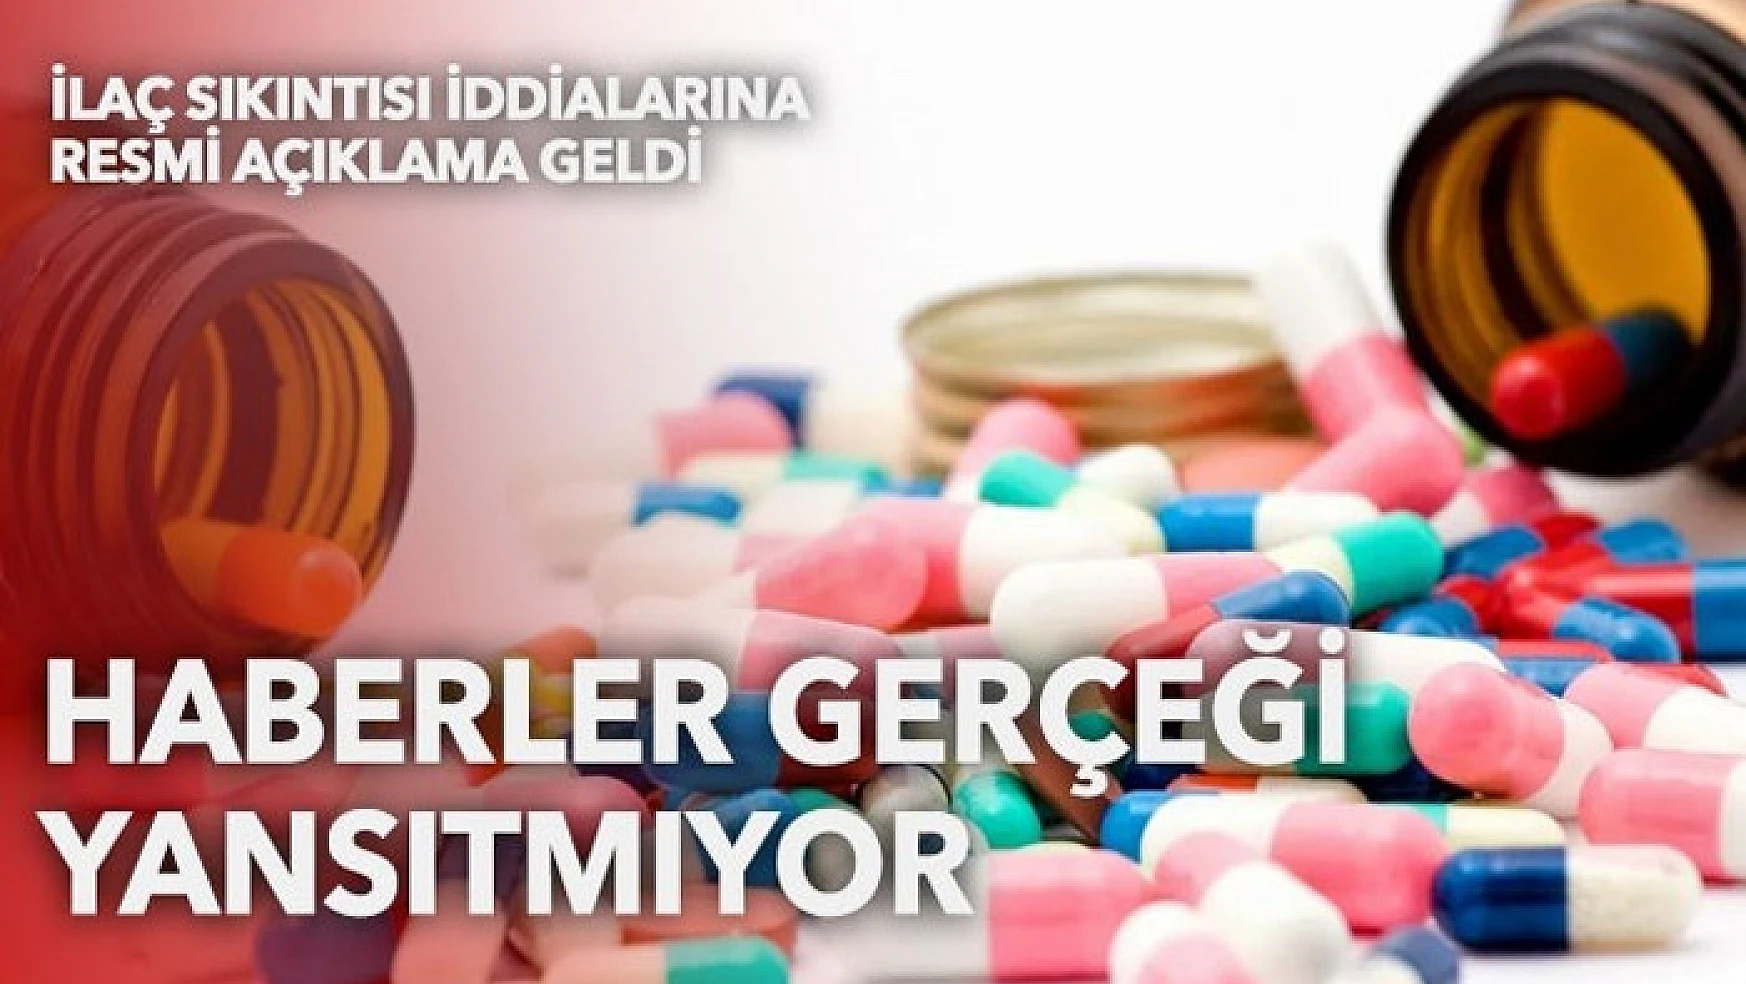 Türkiye İlaç ve Tıbbi Cihaz Kurumu'ndan 'ilaç sıkıntısı' iddialarına cevap